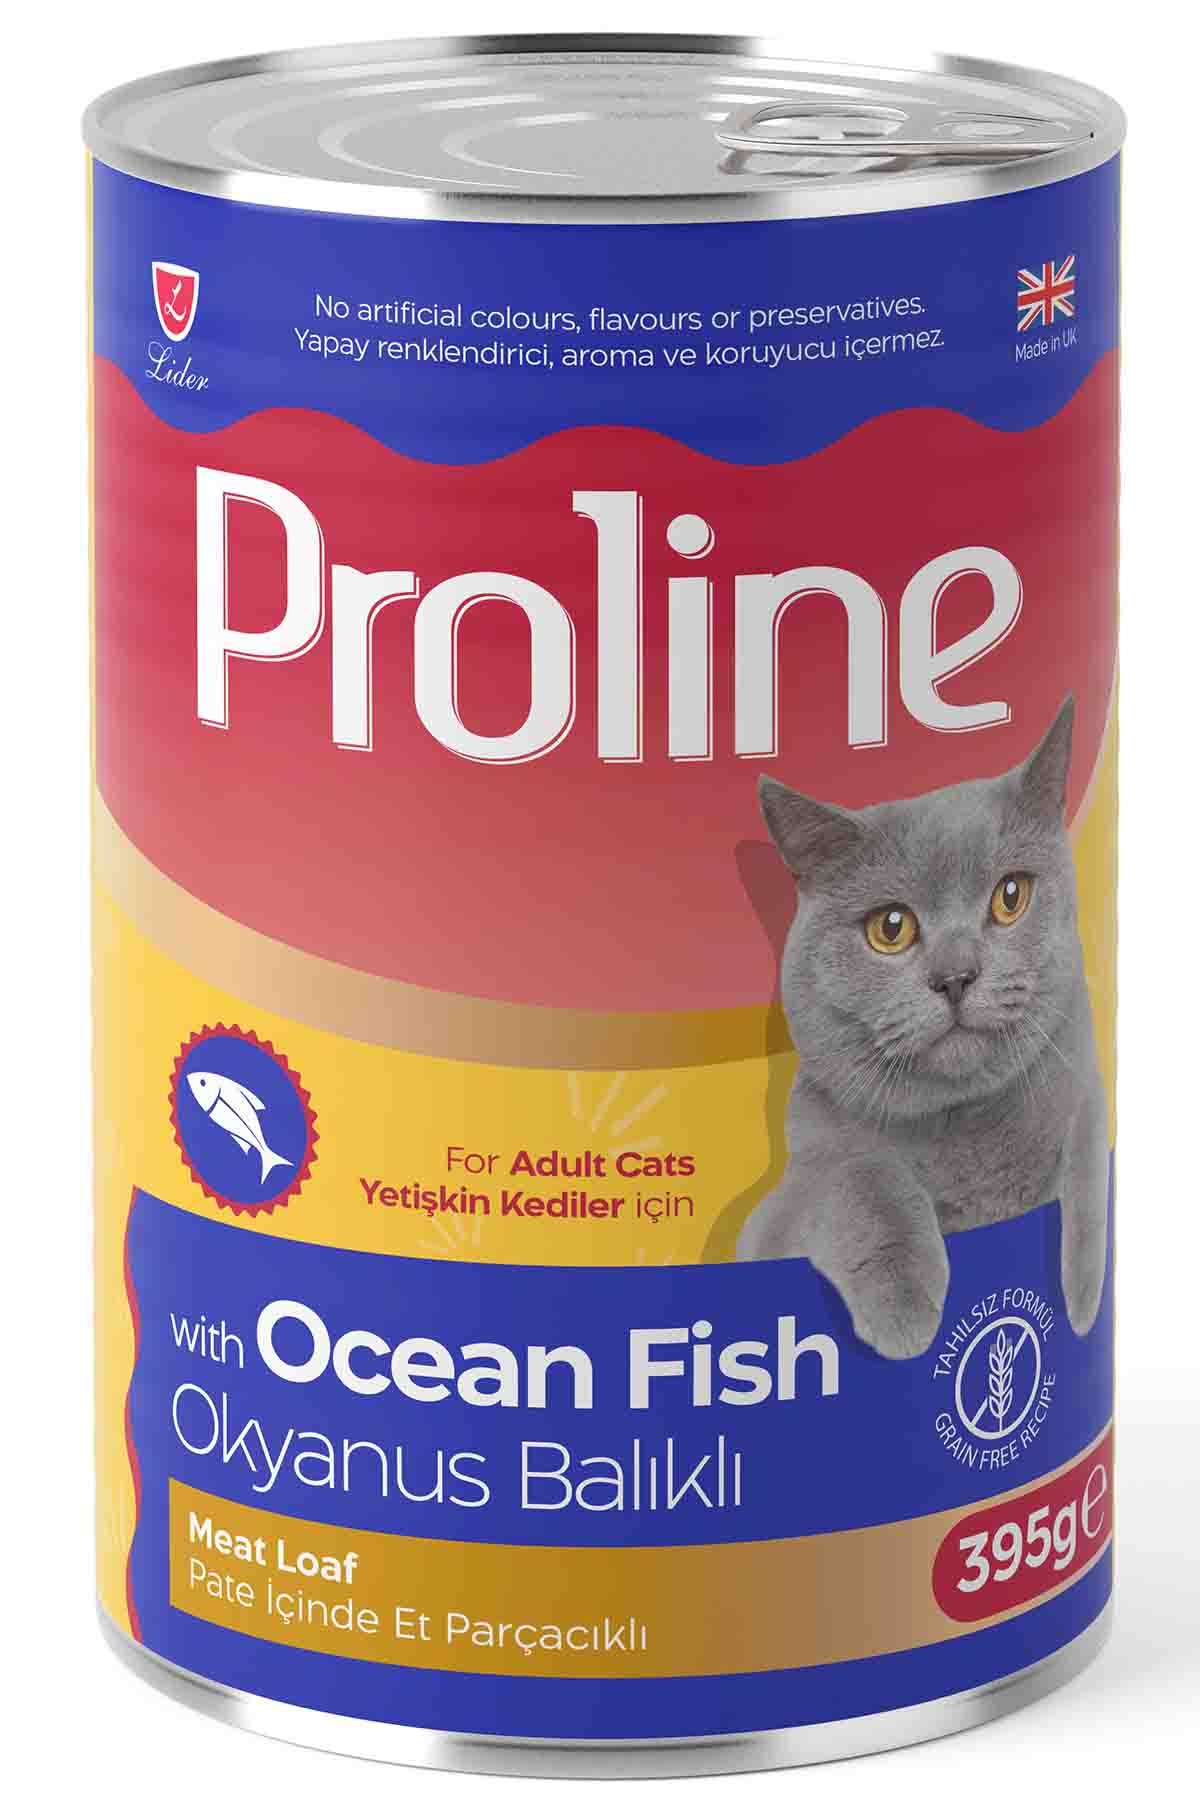 Proline Pate İçinde Et Parçacıklı Okyanus Balıklı Yetişkin Kedi Konservesi 395gr x 20 Adet